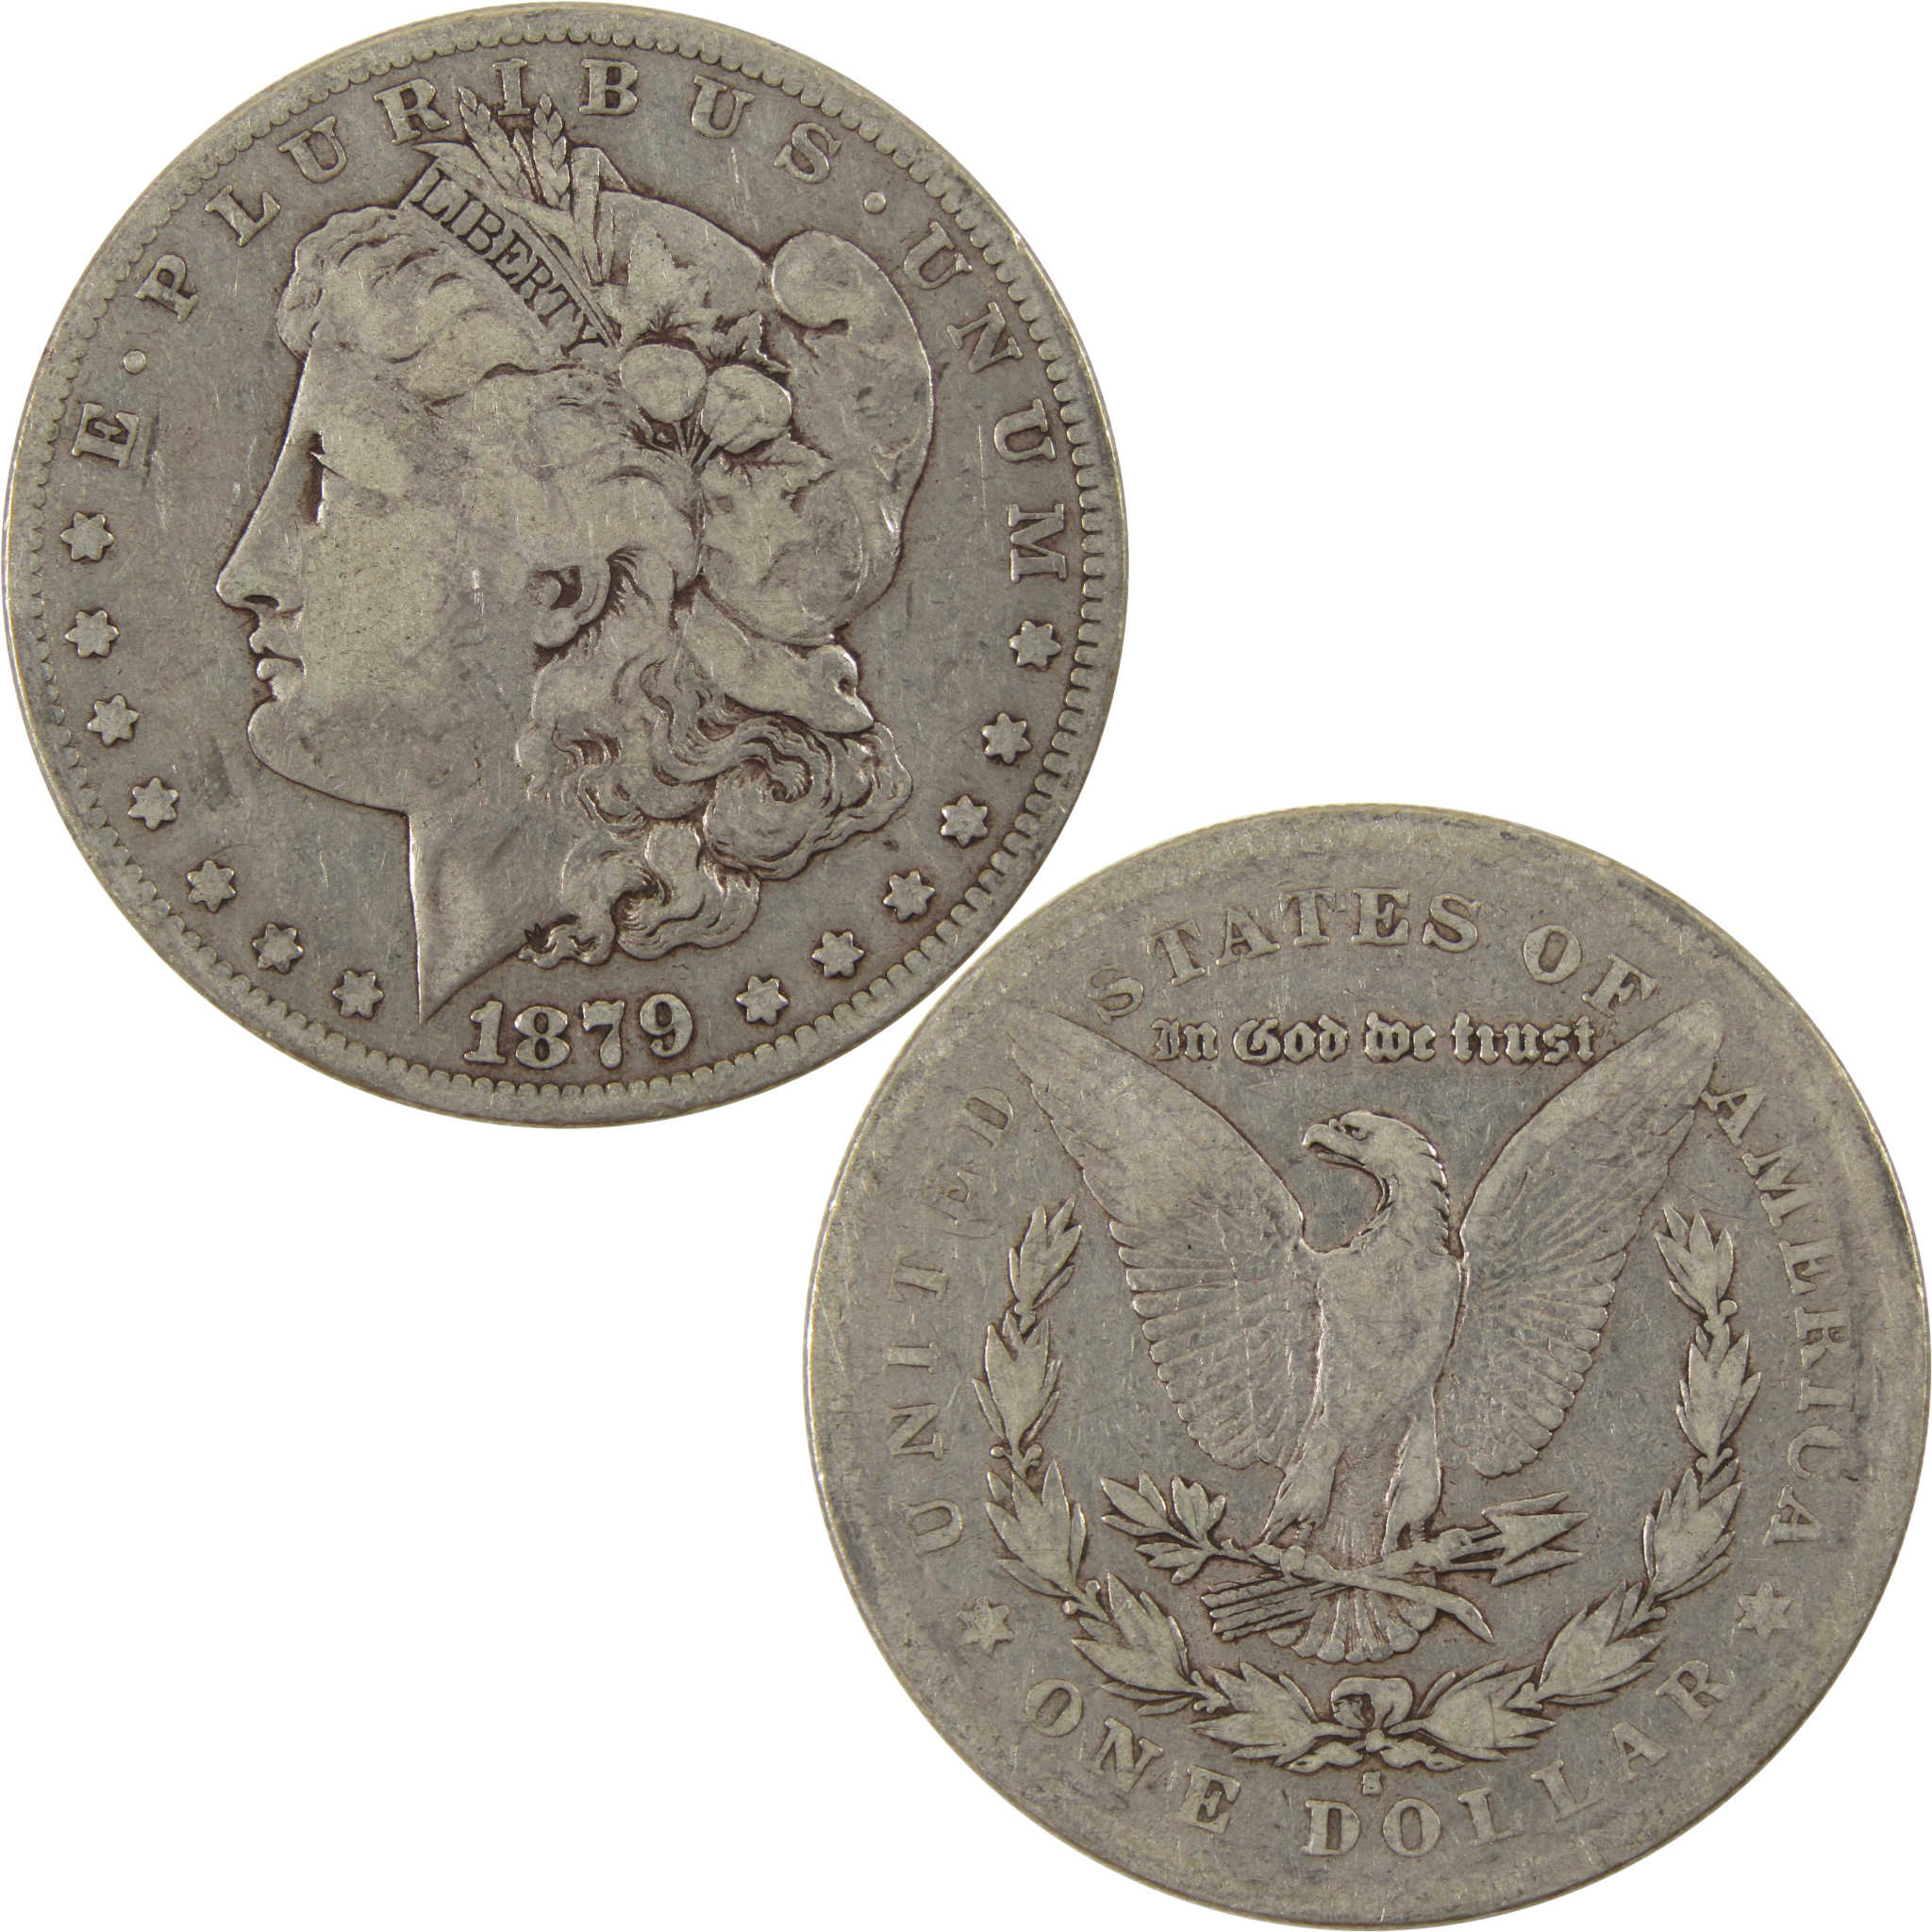 1879 S Rev 78 Morgan Dollar VG Very Good 90% Silver $1 Coin SKU:I8001 - Morgan coin - Morgan silver dollar - Morgan silver dollar for sale - Profile Coins &amp; Collectibles